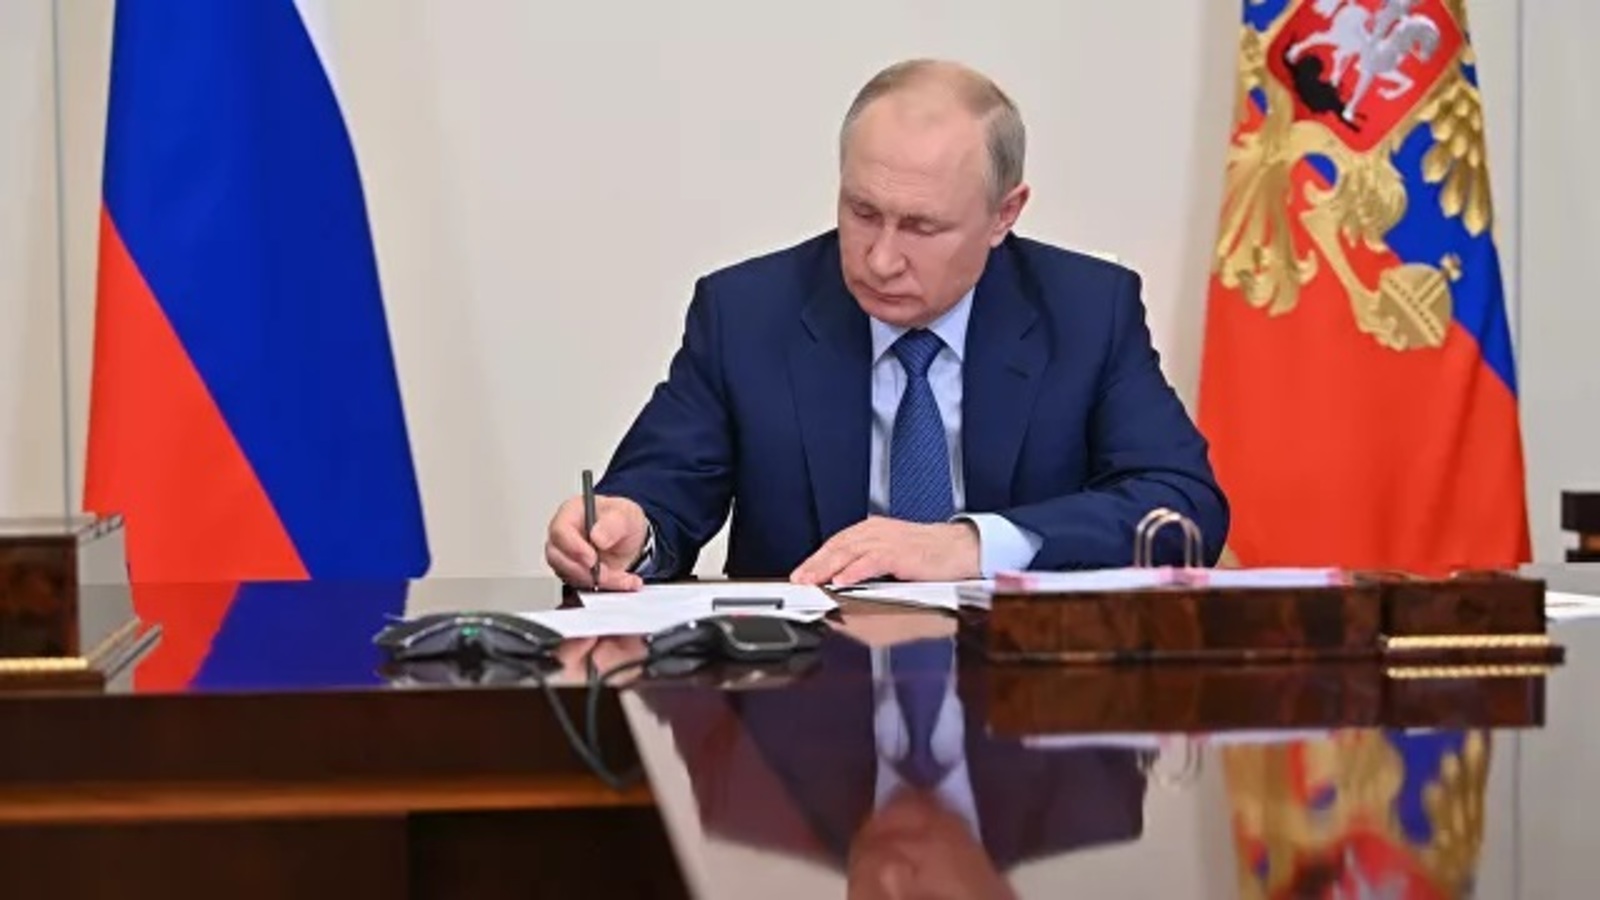 Владимир Путин объявил 2022-й Годом культурного наследия народов России